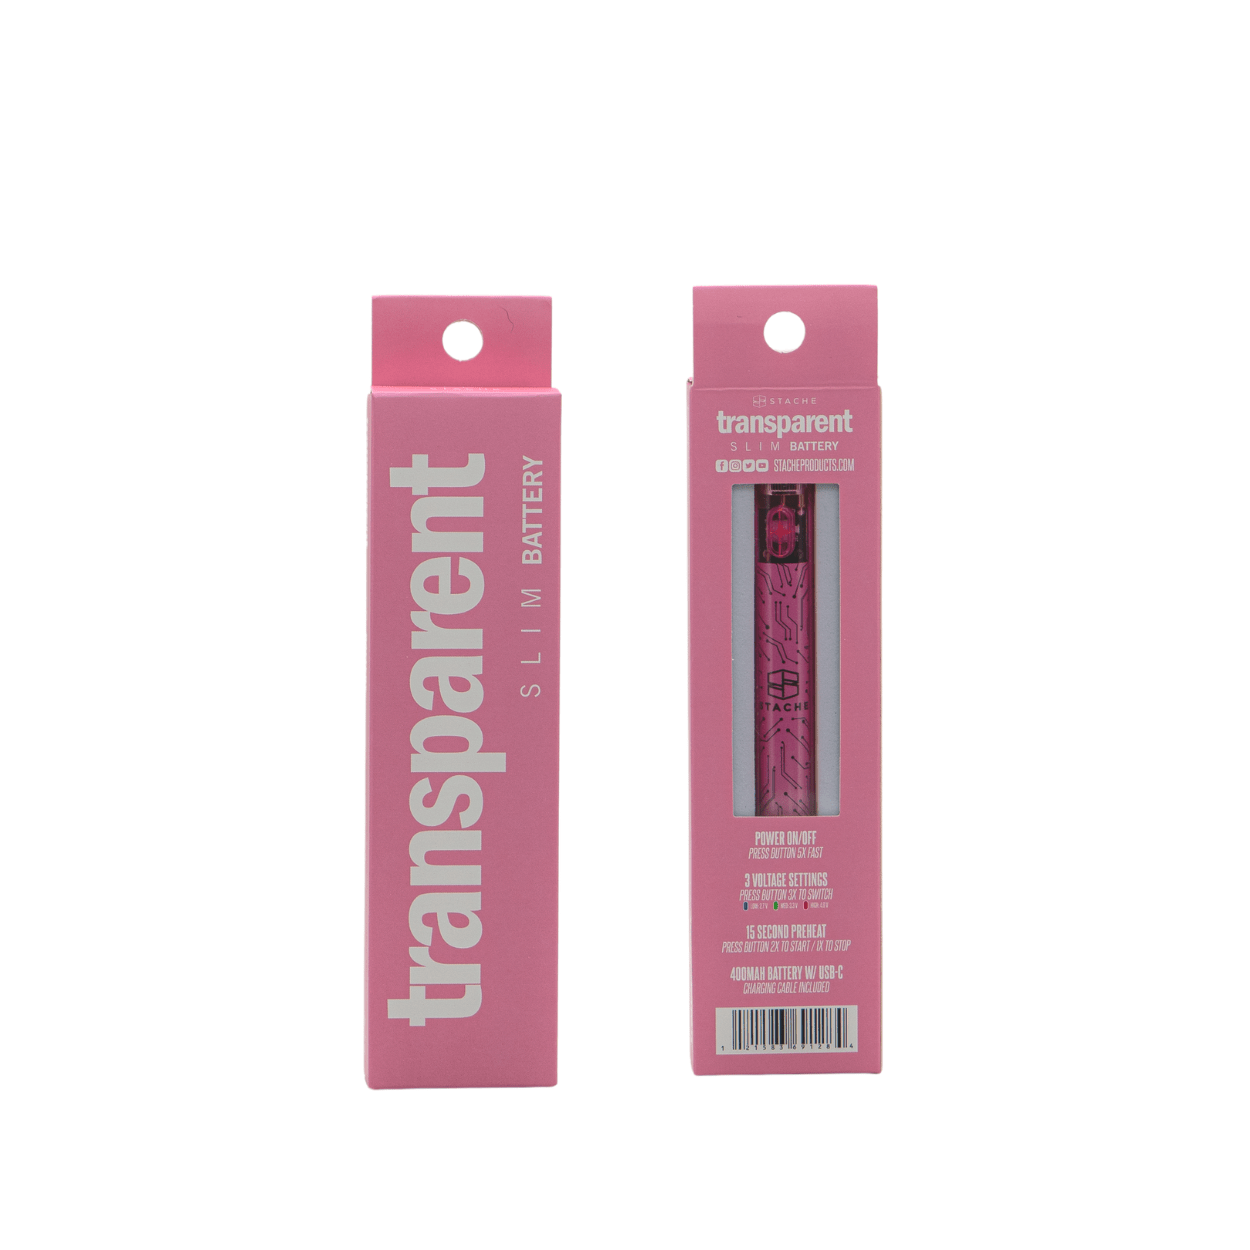 Stache Vaporizer Pink Transparent battery